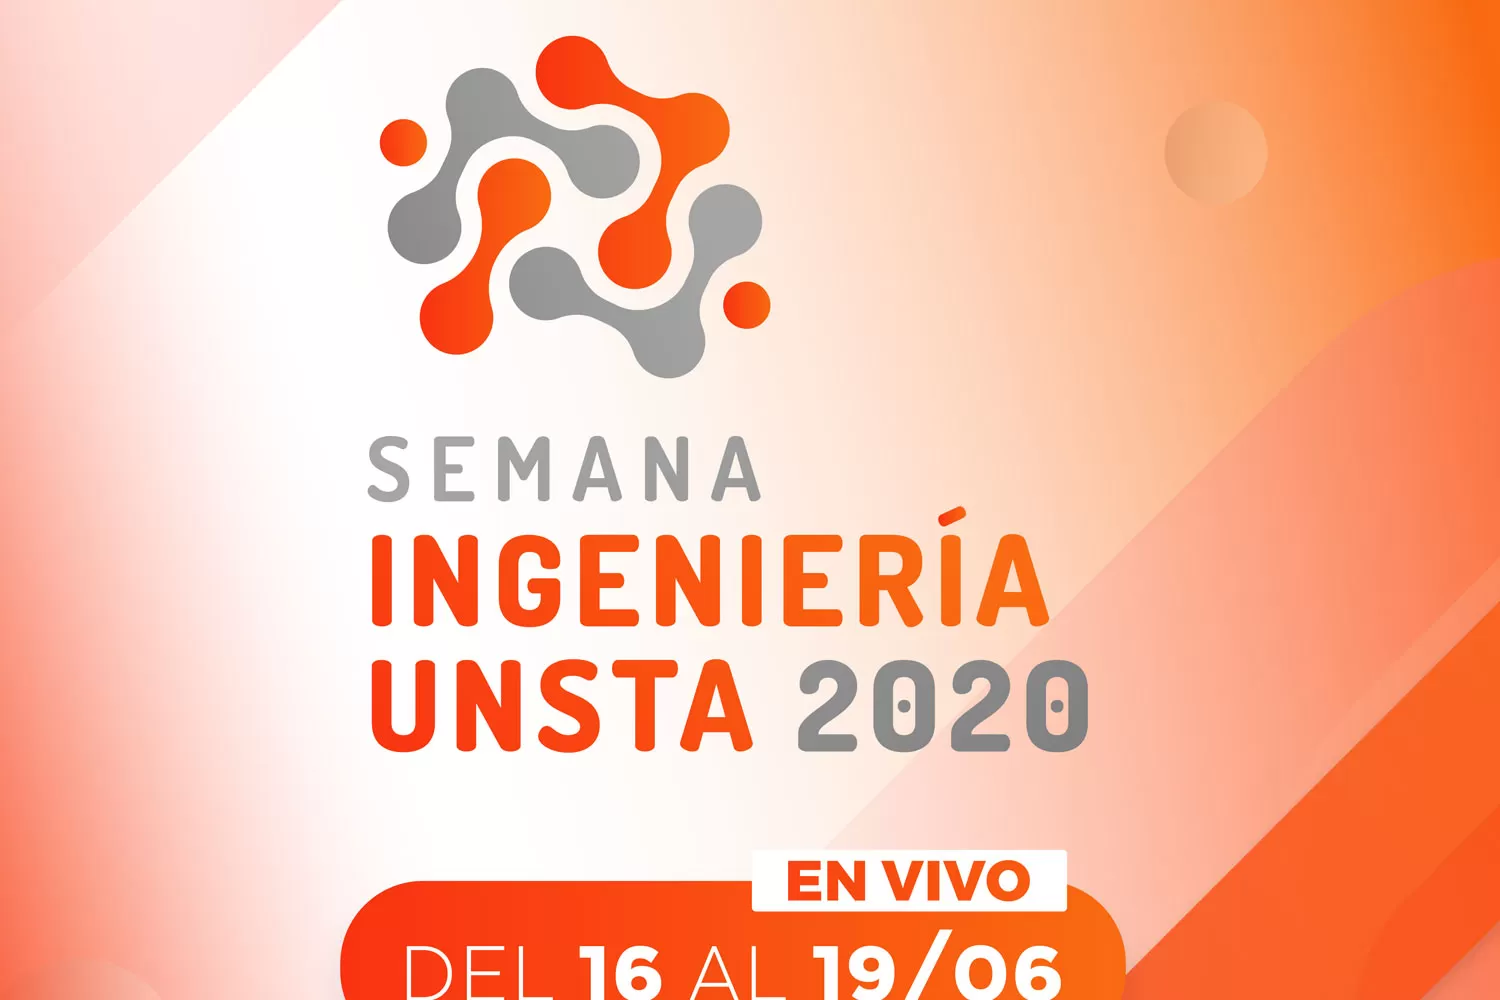 Comienza la Semana de la Ingeniería UNSTA 2020 #SemanadelaIngenieriaUNSTA2020